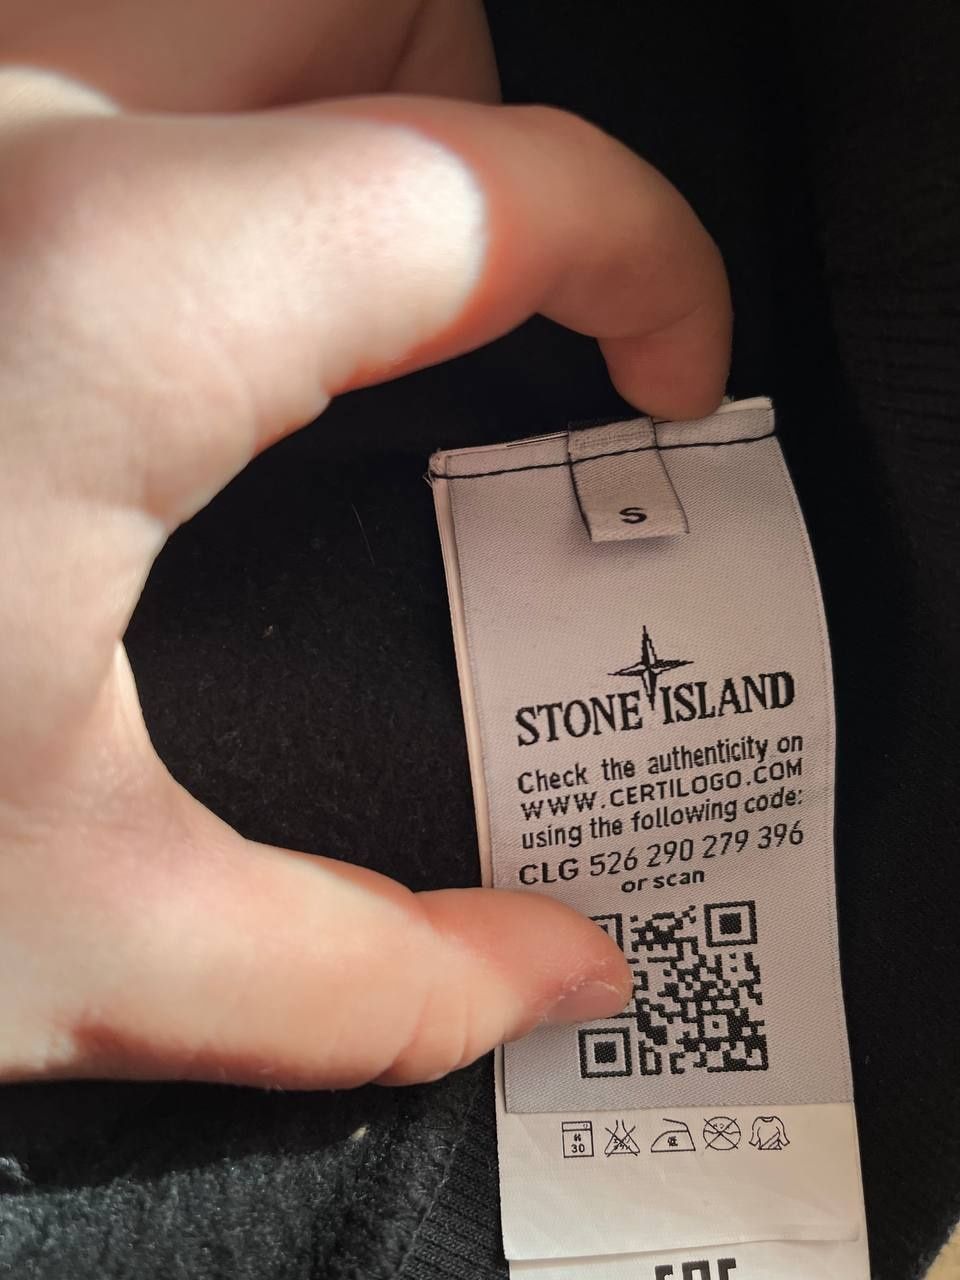 Stone island size s